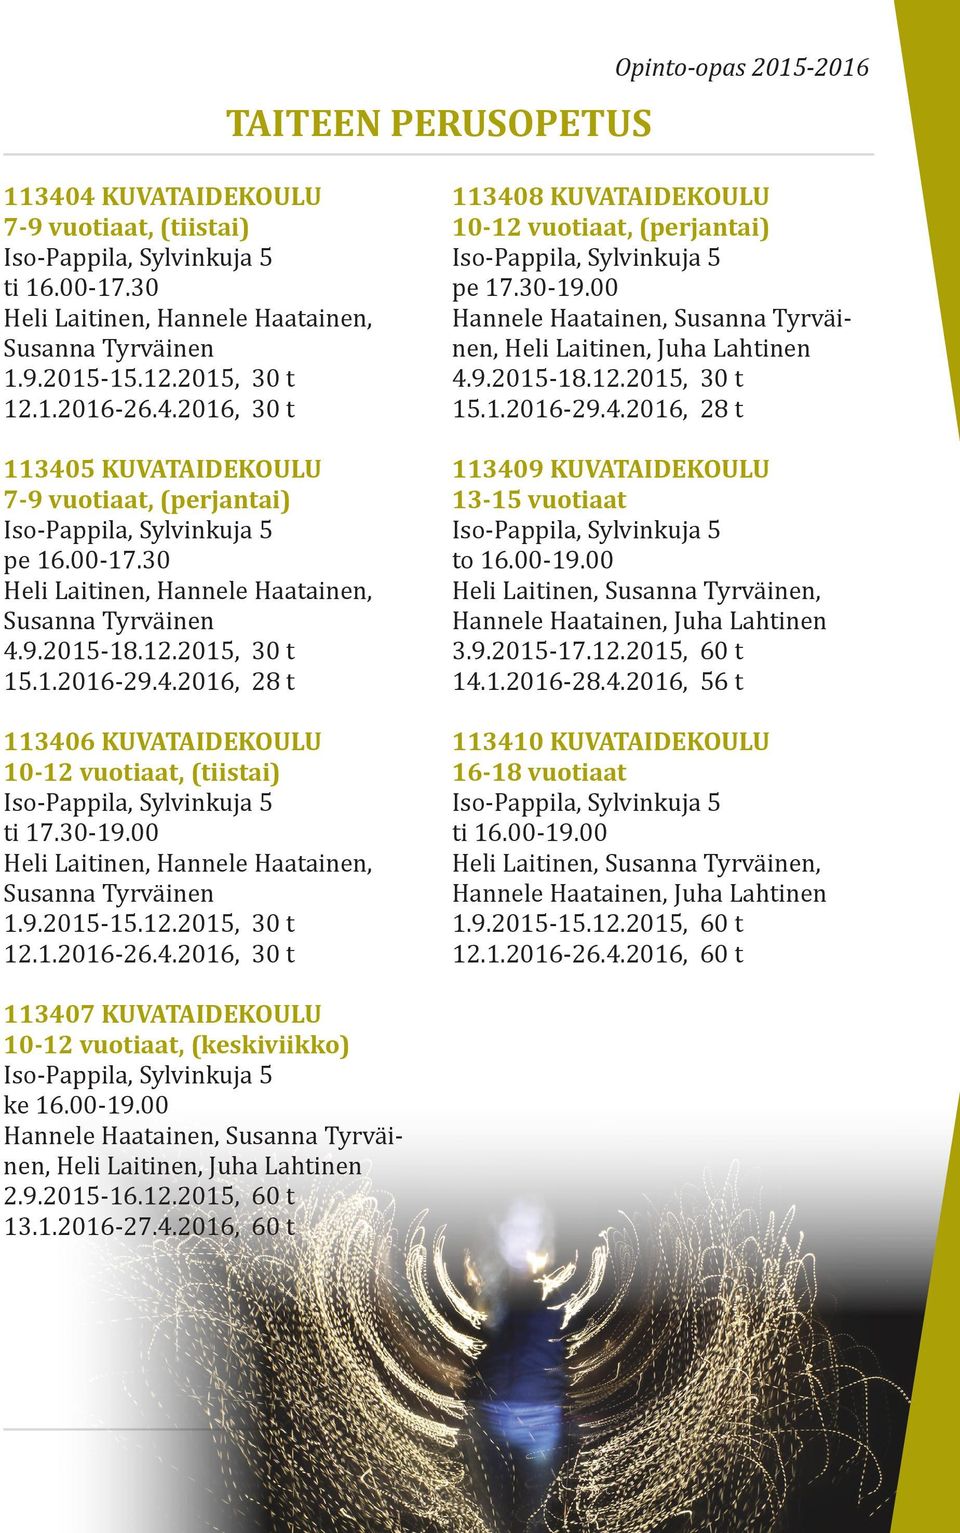 1.2016-29.4.2016, 28 t 113406 KUVATAIDEKOULU 10-12 vuotiaat, (tiistai) Iso-Pappila, Sylvinkuja 5 ti 17.30-19.00 Heli Laitinen, Hannele Haatainen, Susanna Tyrväinen 1.9.2015-15.12.2015, 30 t 12.1.2016-26.